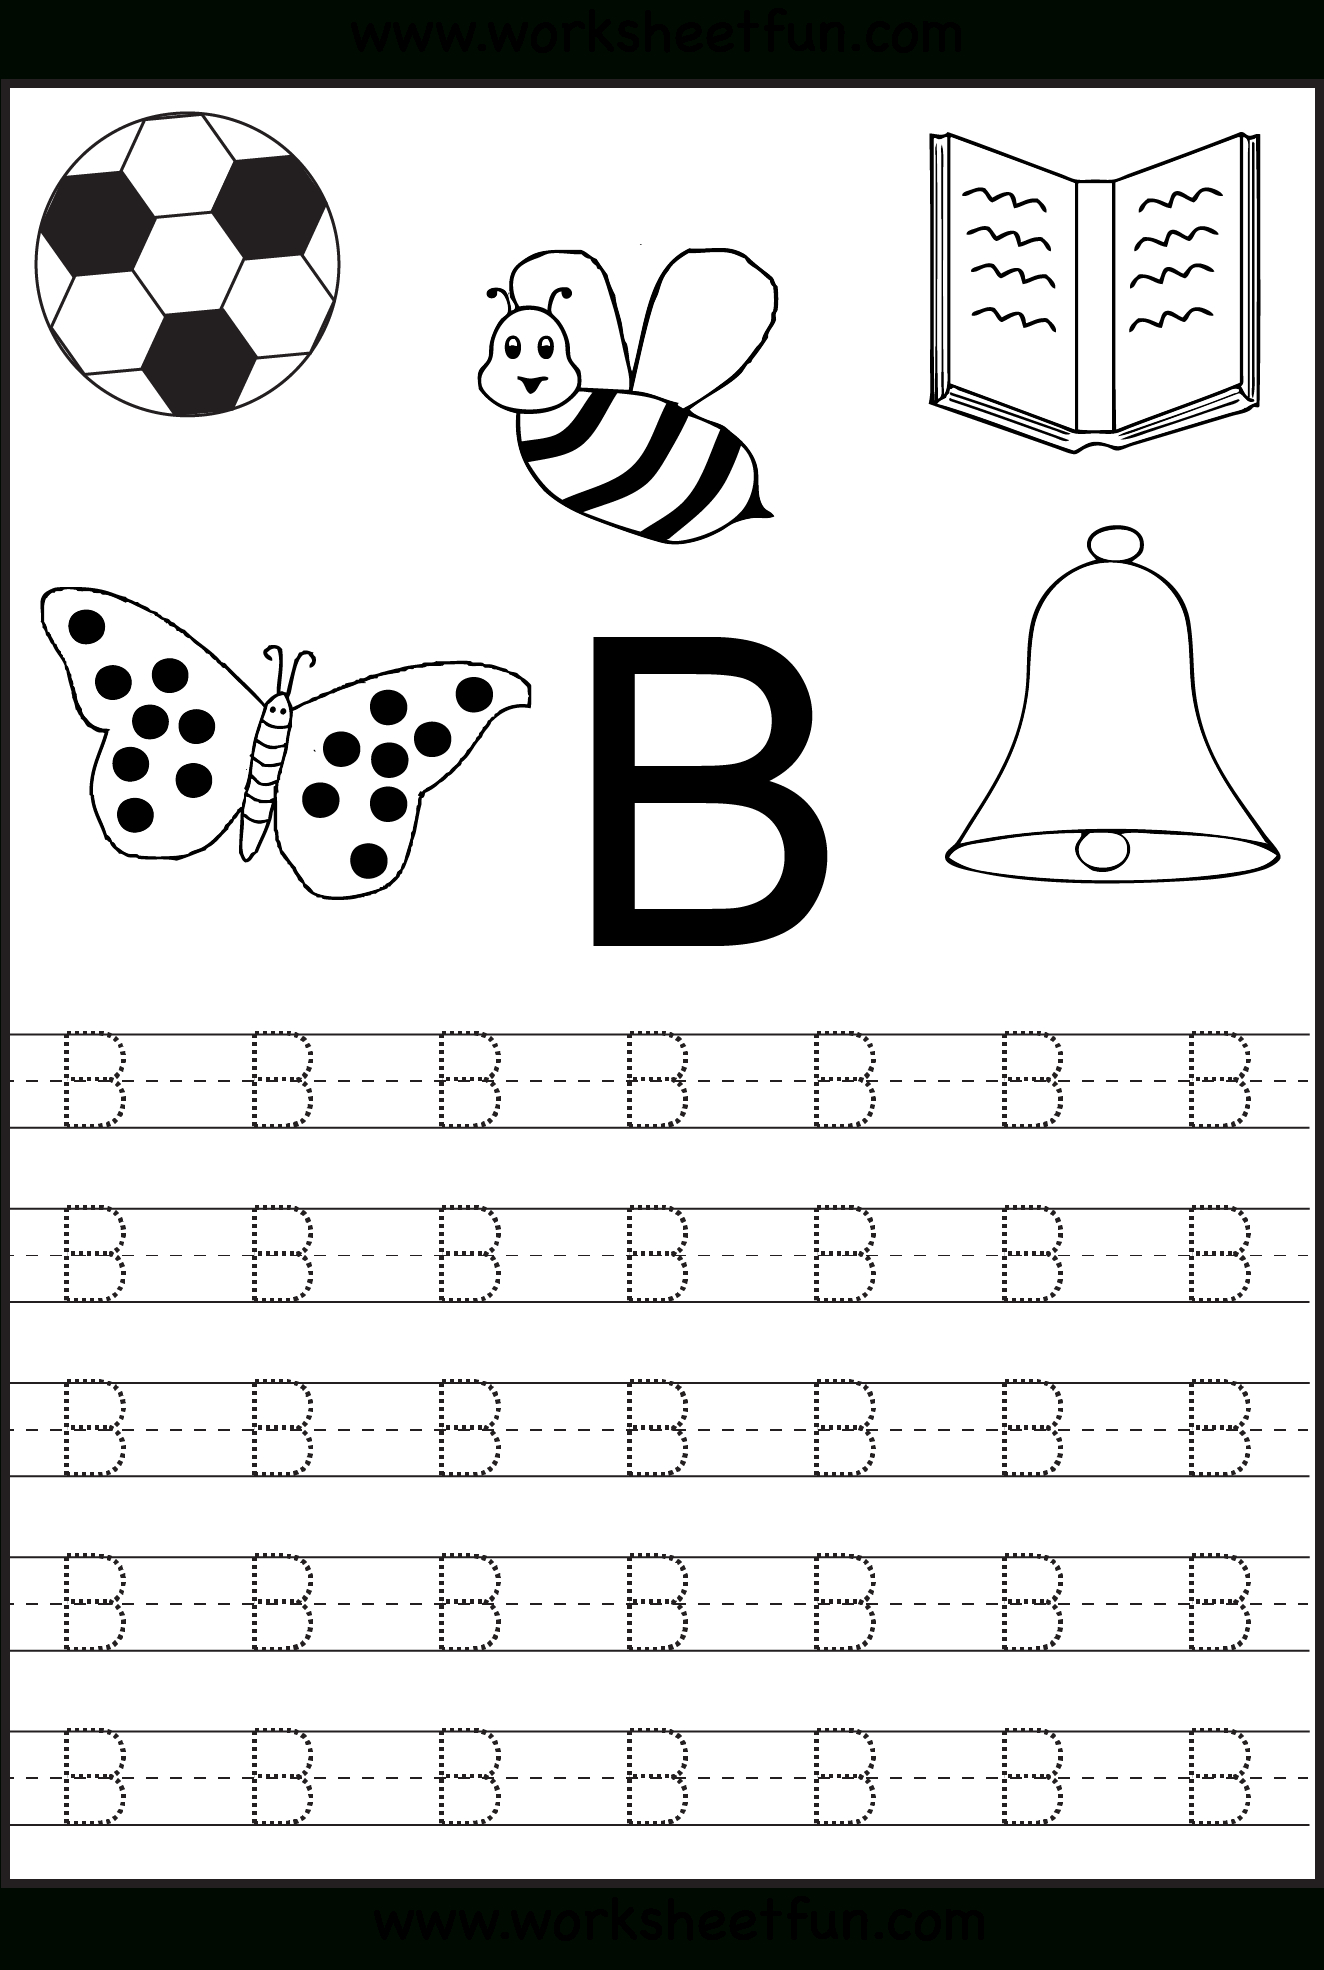 Free Printable Letter Tracing Worksheets For Kindergarten in Letter B Worksheets For Prek